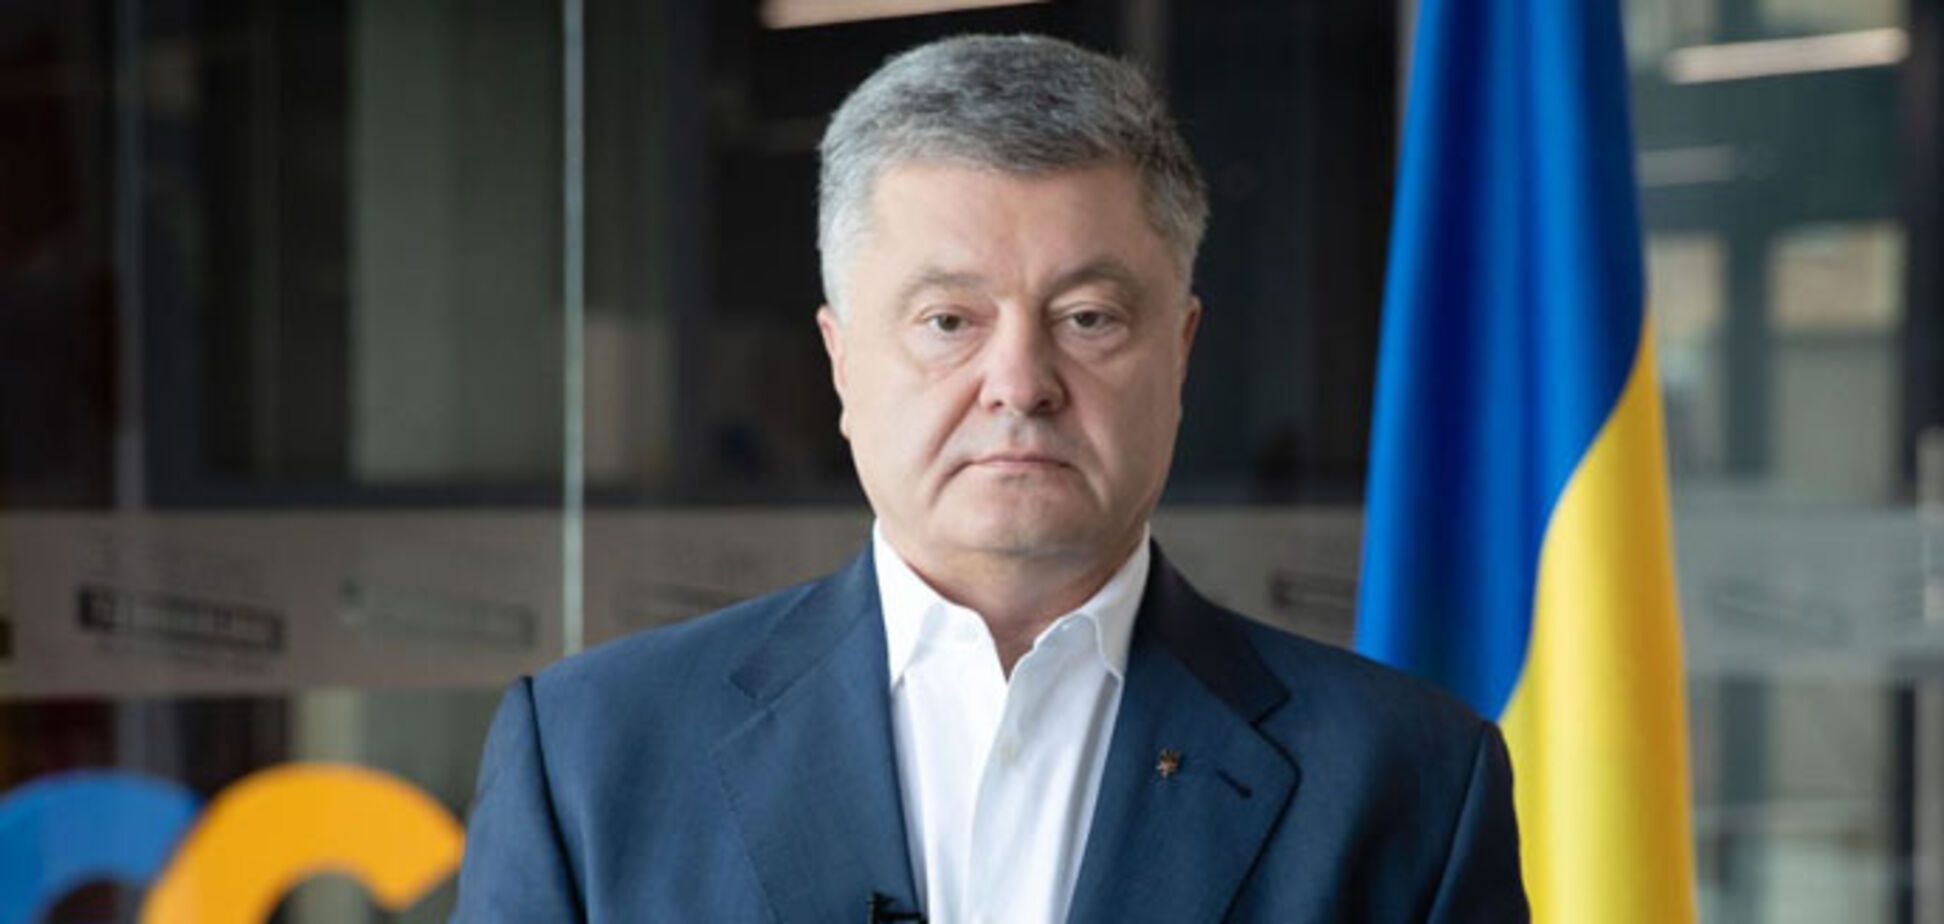 Социологи Центра Разумкова отметили рост рейтинга Порошенко и его партии